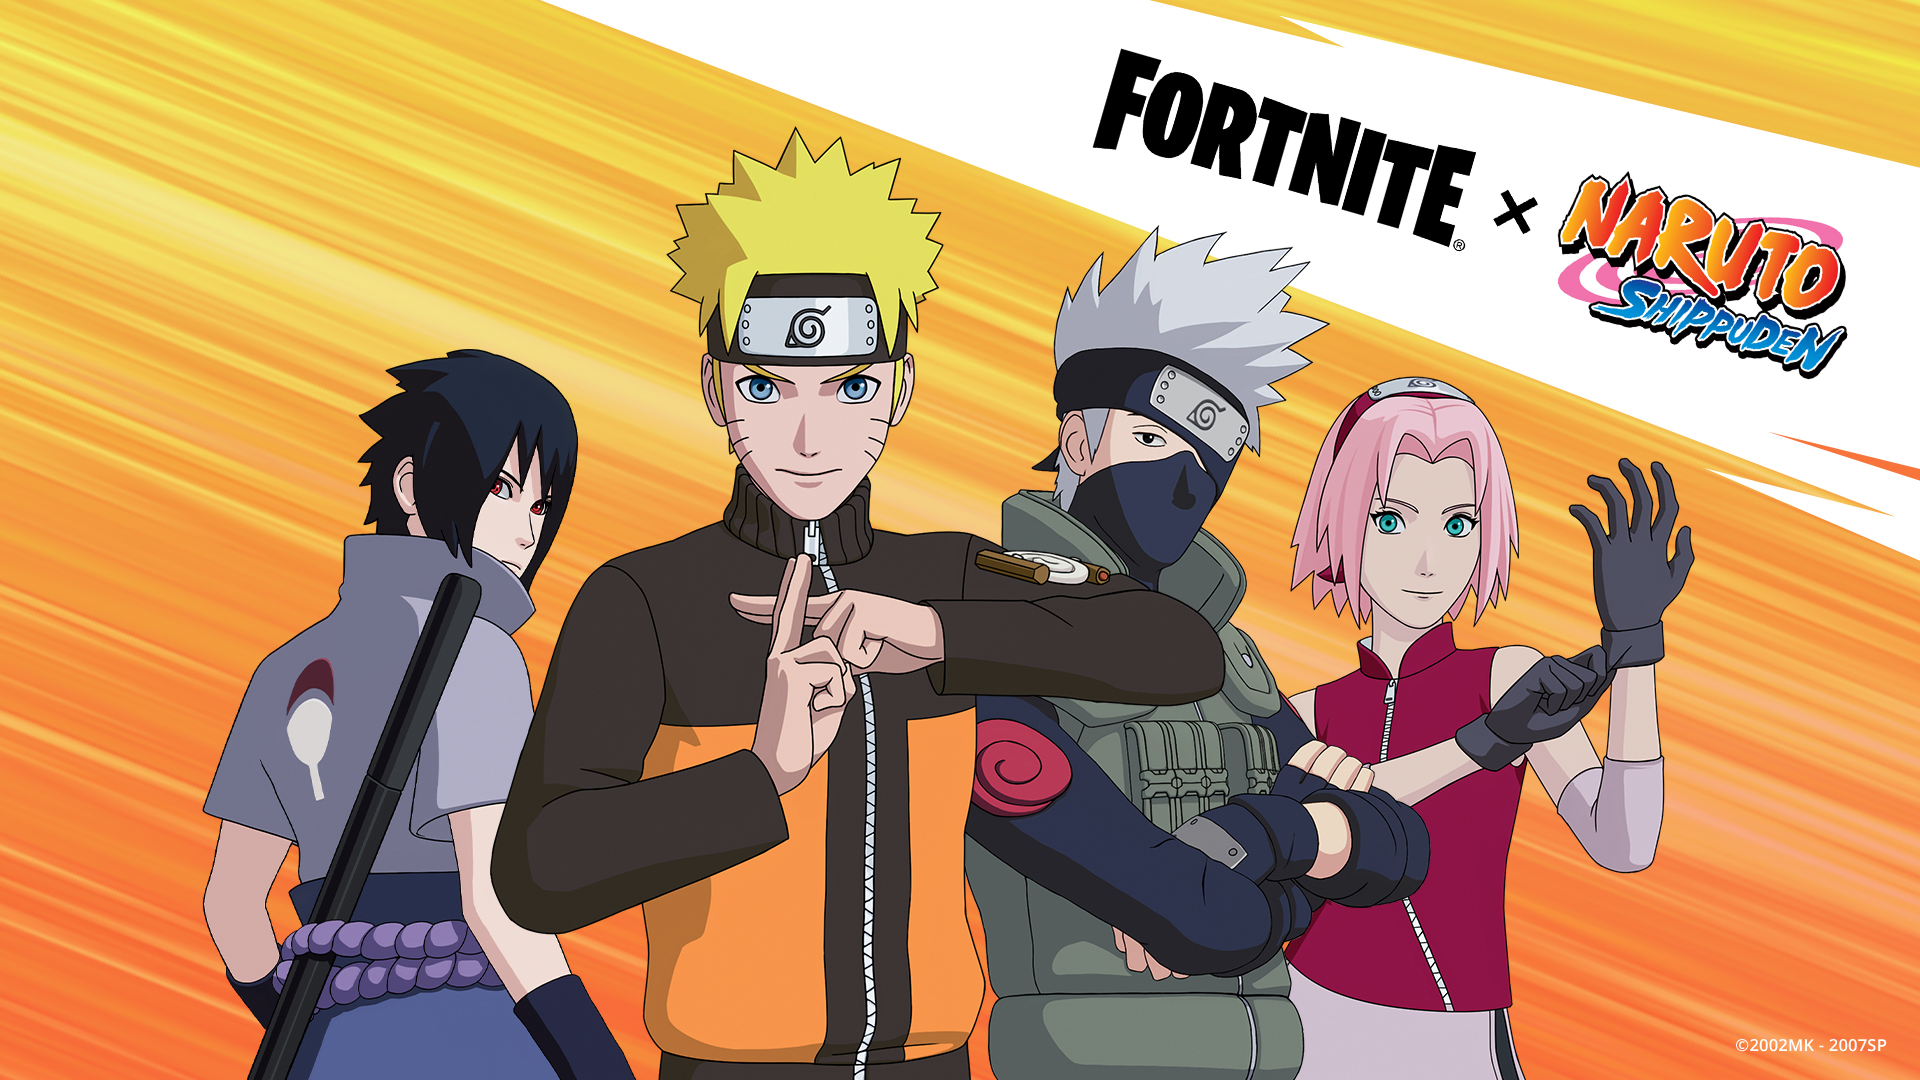 วิดิโอจาก TikTok แสดงการเล่นที่แปลกประหลาดใน Fortnite เมื่อ Naruto ยิงใยได้